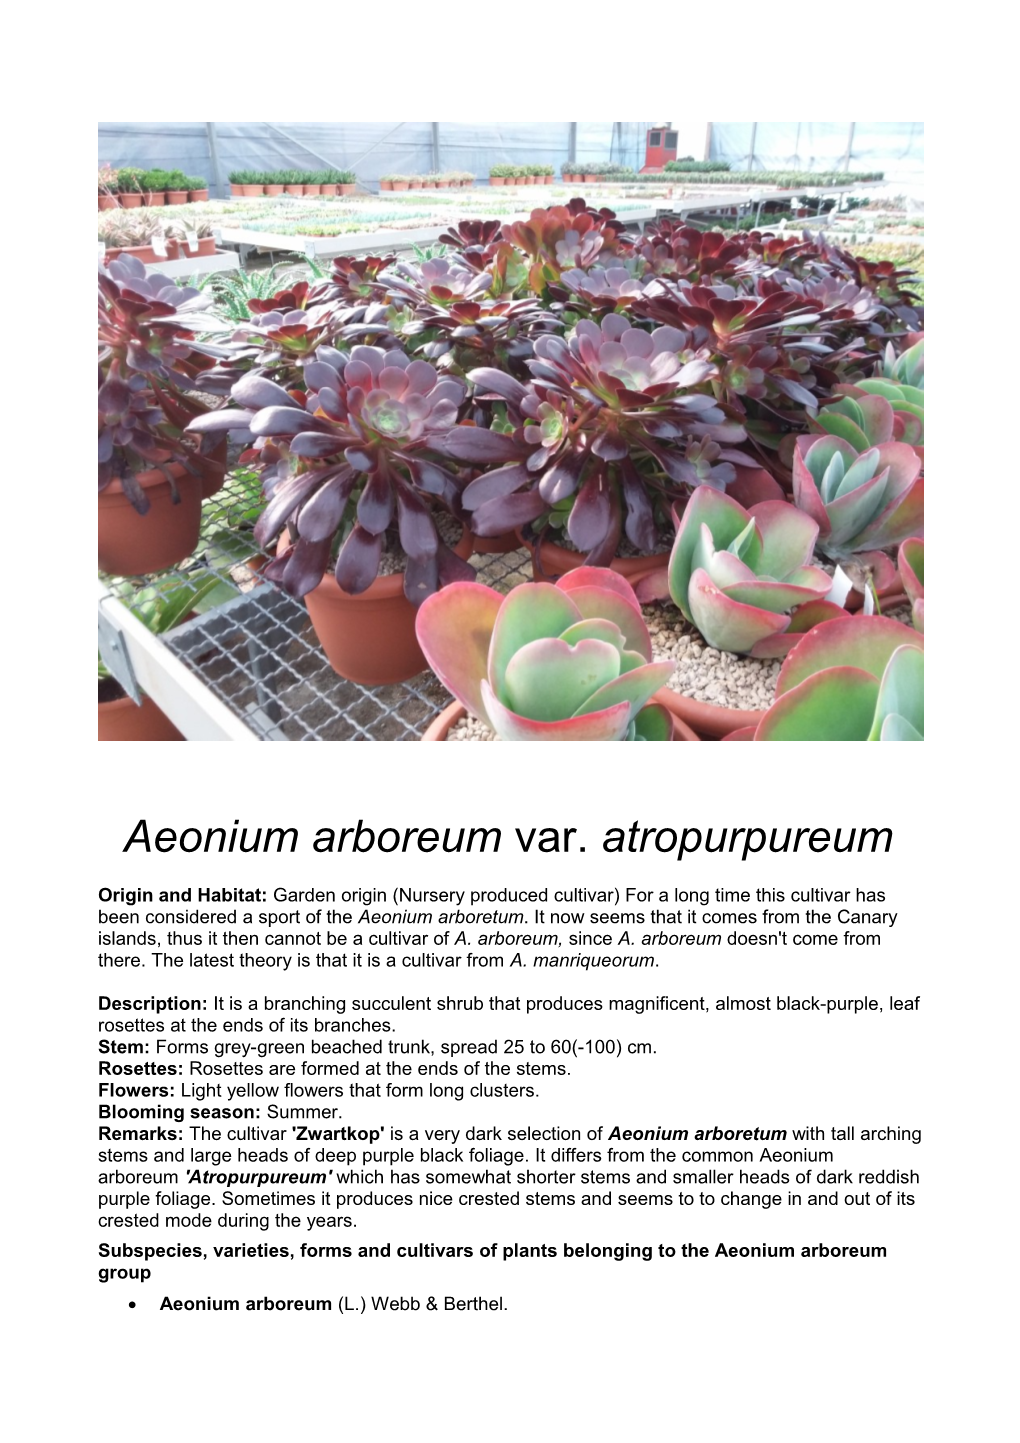 Aeonium Arboreum Var. Atropurpureum